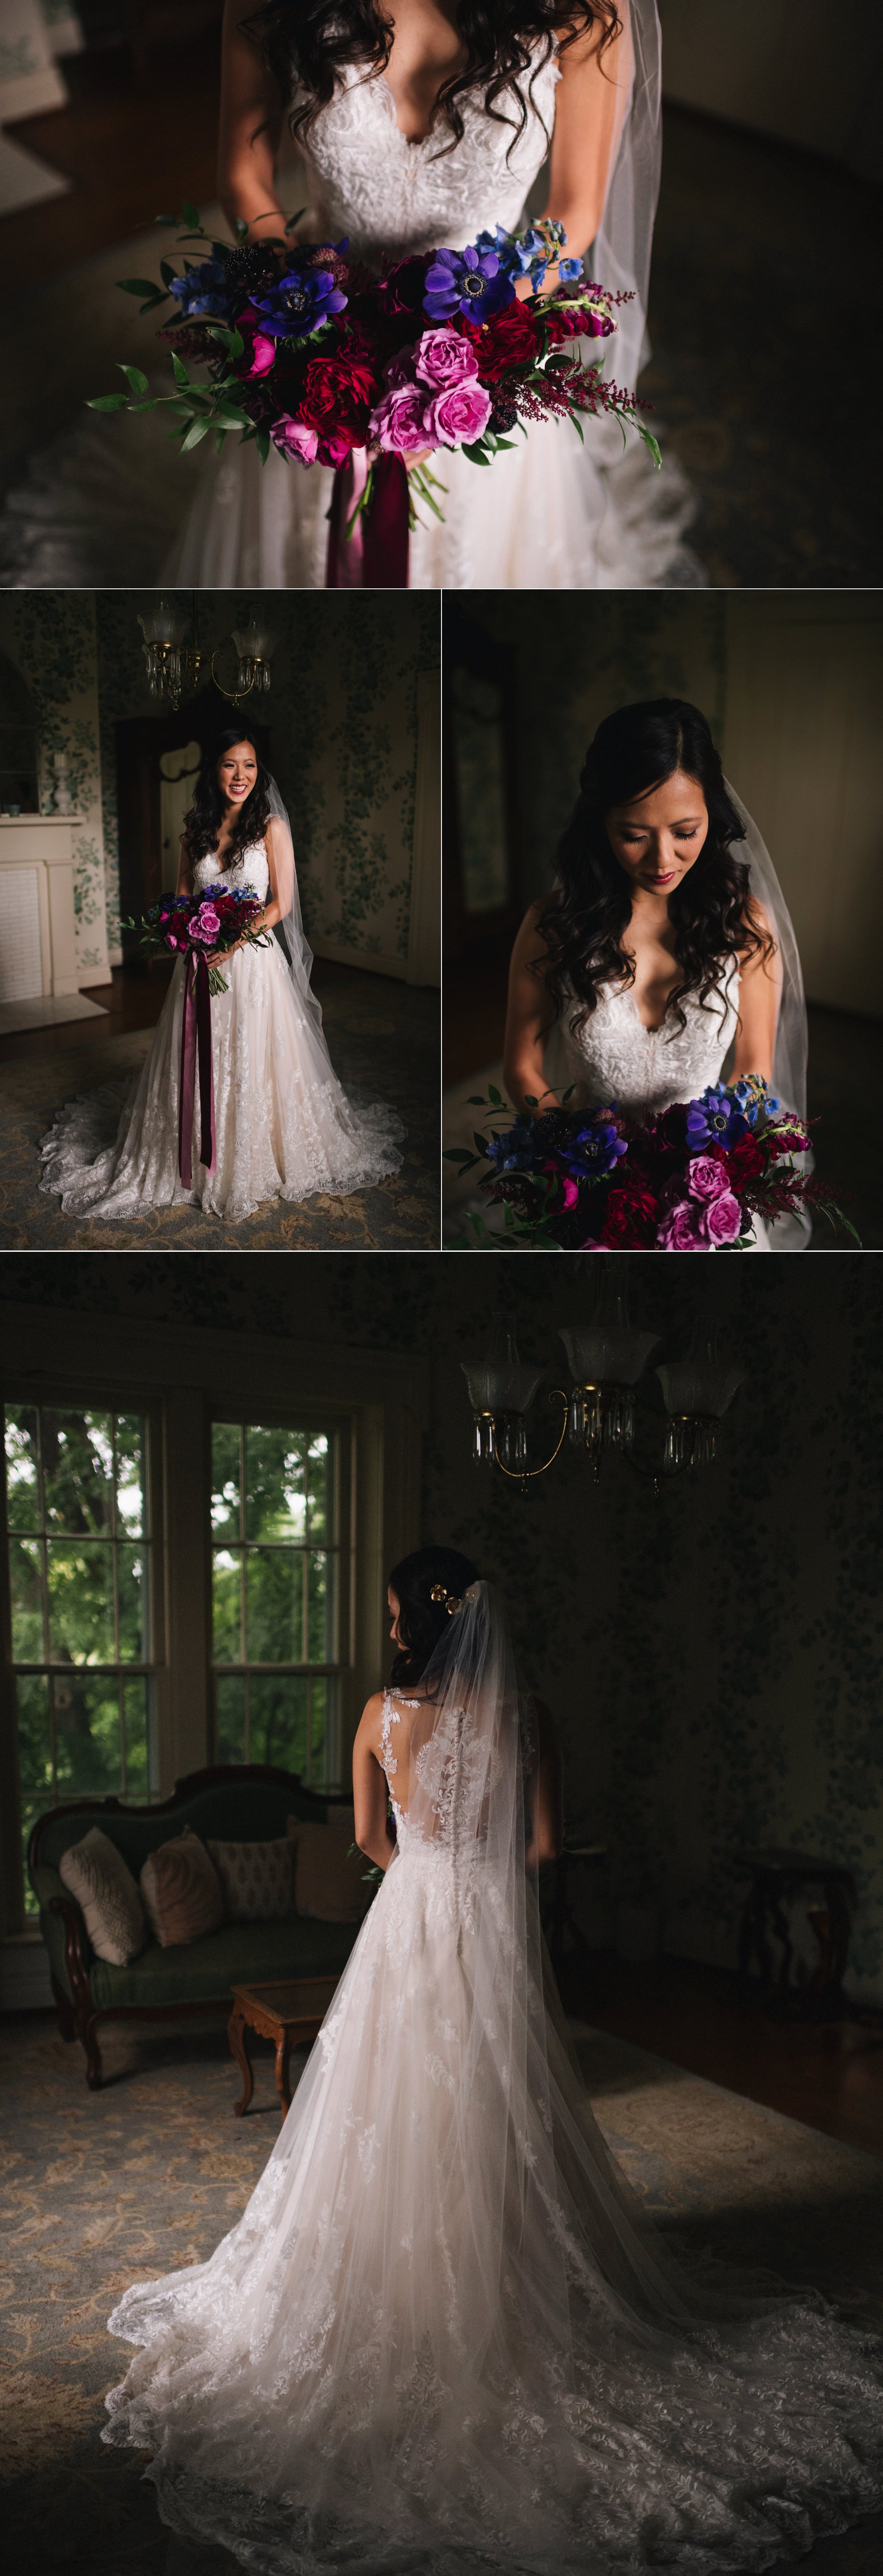 Warrenwood-Manor-Wedding-by-Louisville-Photographer-Sarah-Katherine-Davis00003.jpg